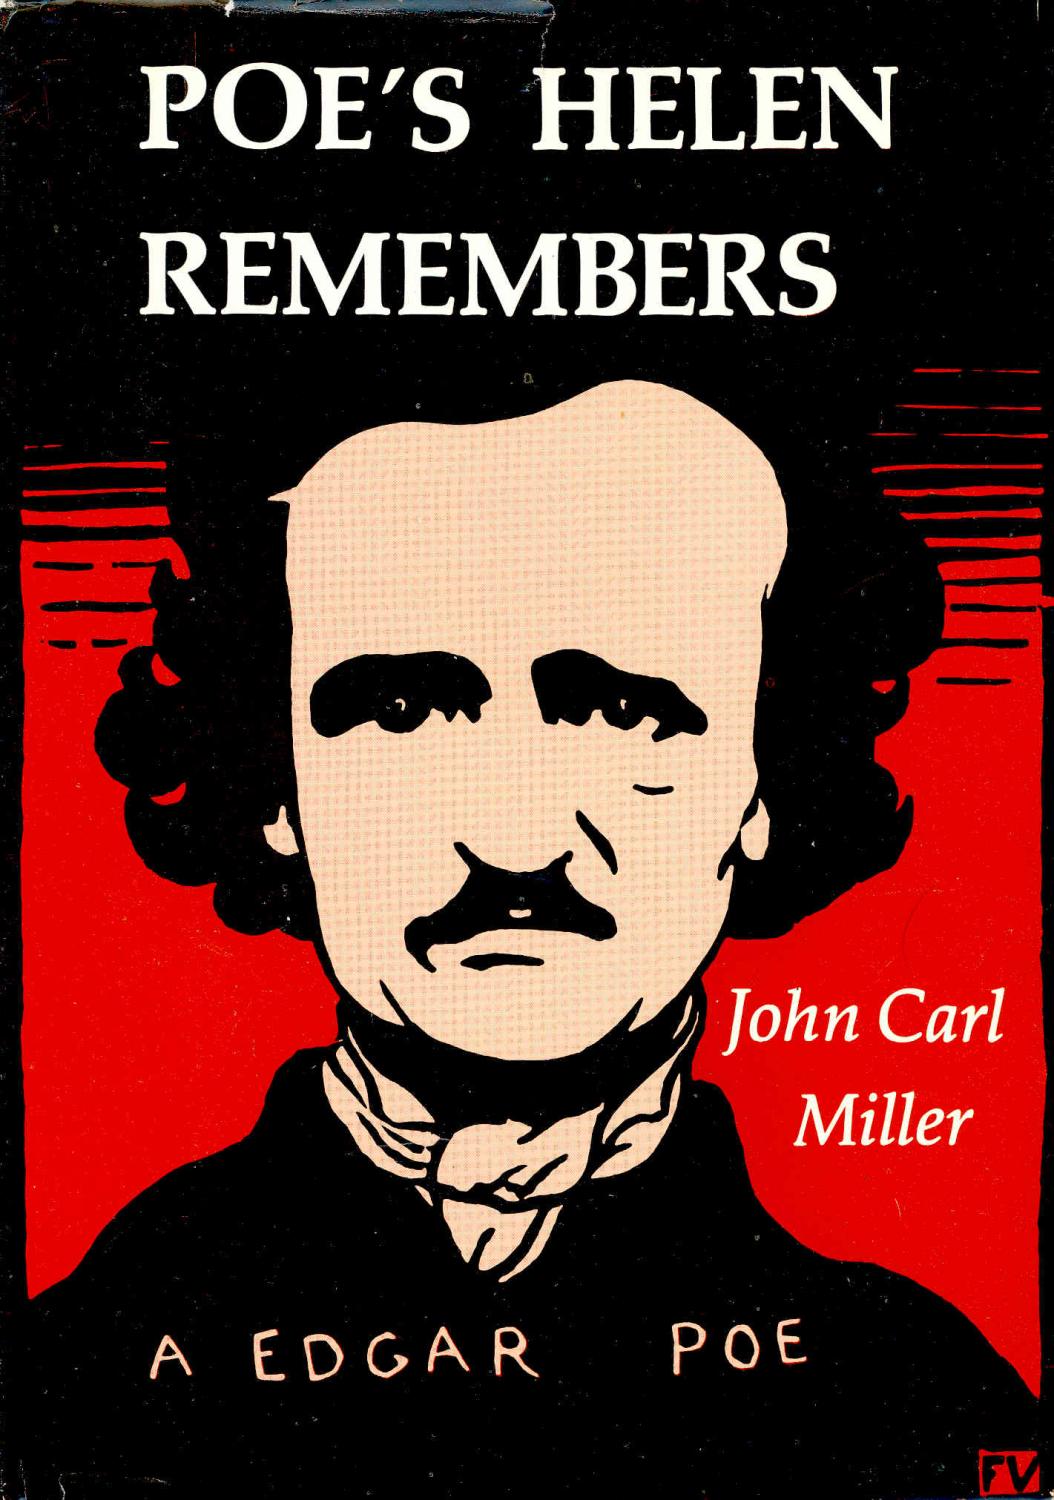 Poe's Helen remembers - Whitman, Sarah Helen, 1803-1878. ; Ingram, John Henry, 1842-1916 ; Miller, John Carl. ; Poe, Edgar Allan, 1809-1849; jacket illustration, Felix Valloton